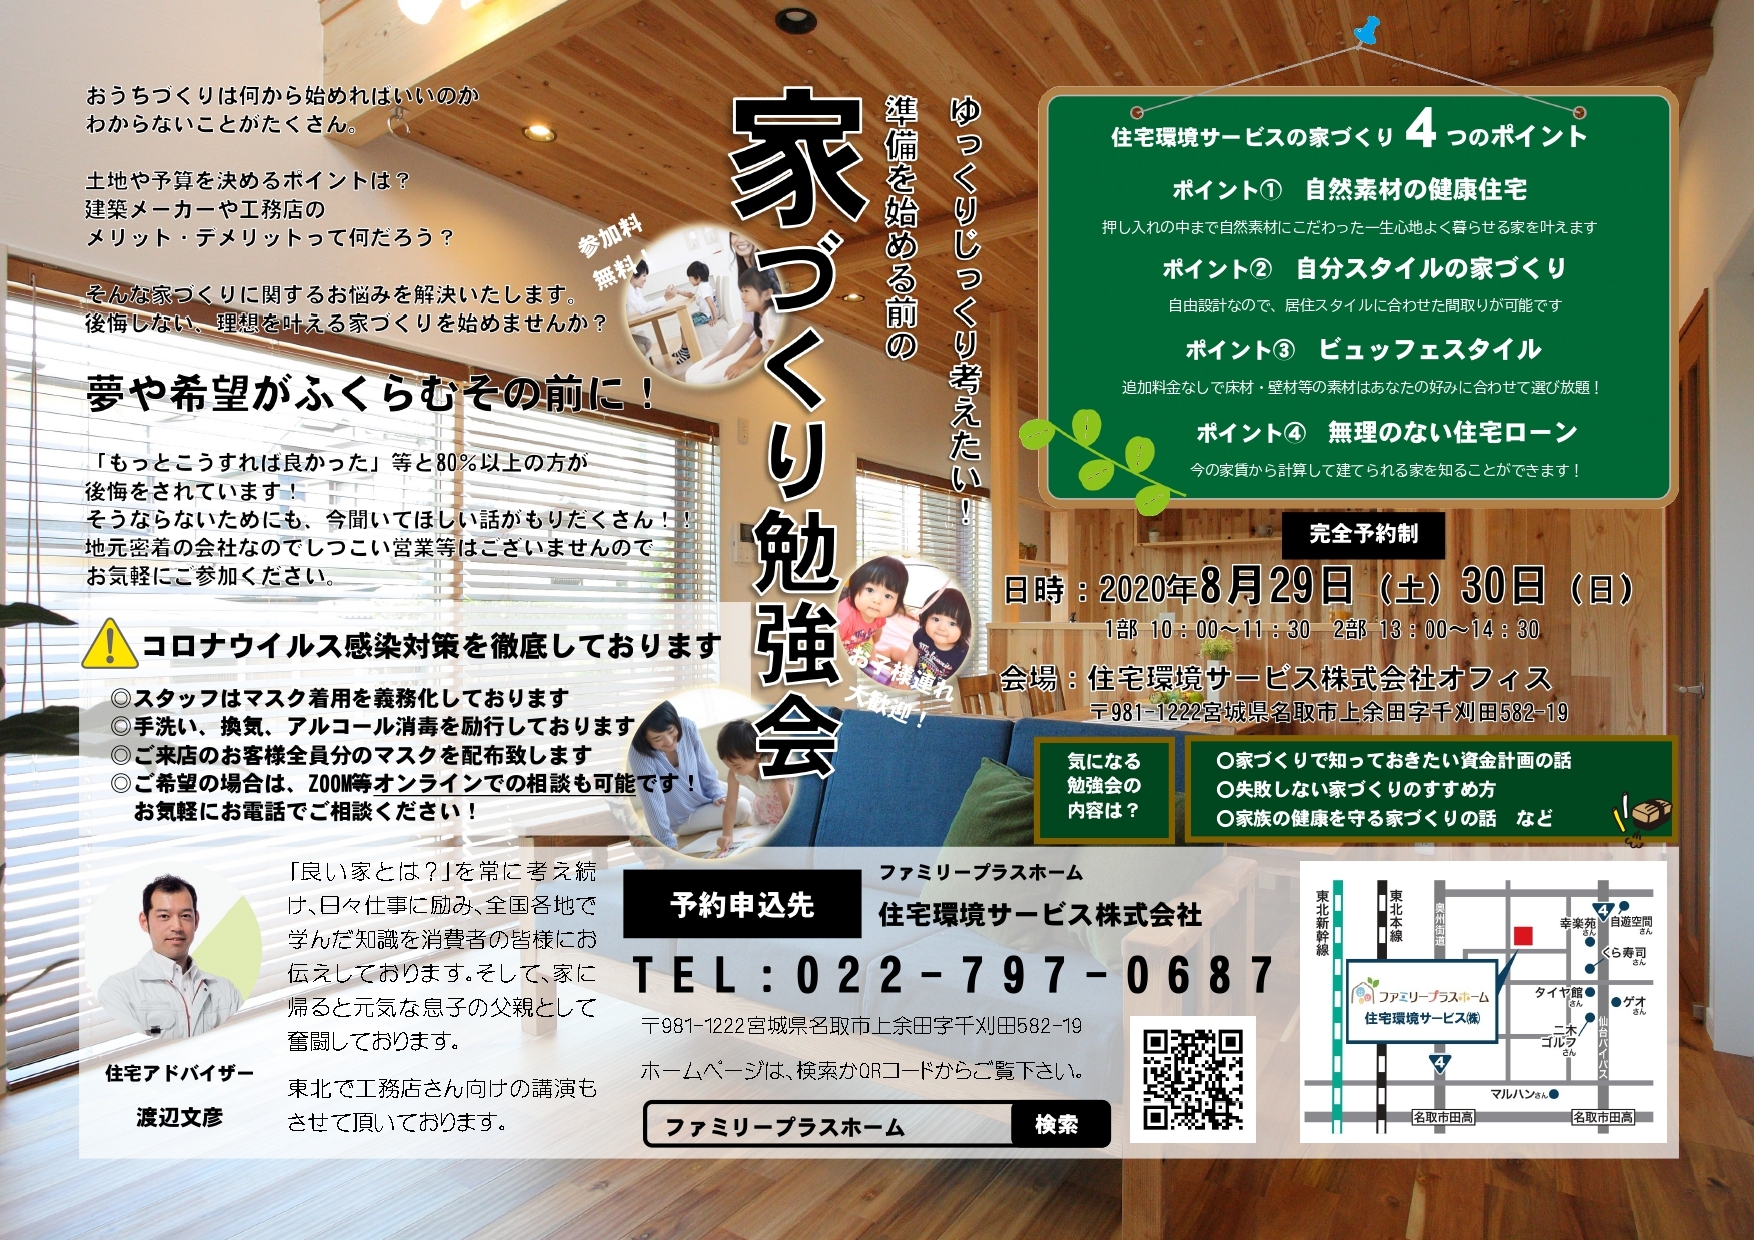 2020.8.29-30家づくり勉強会(ファミリープラスホーム)_page-0001.jpg